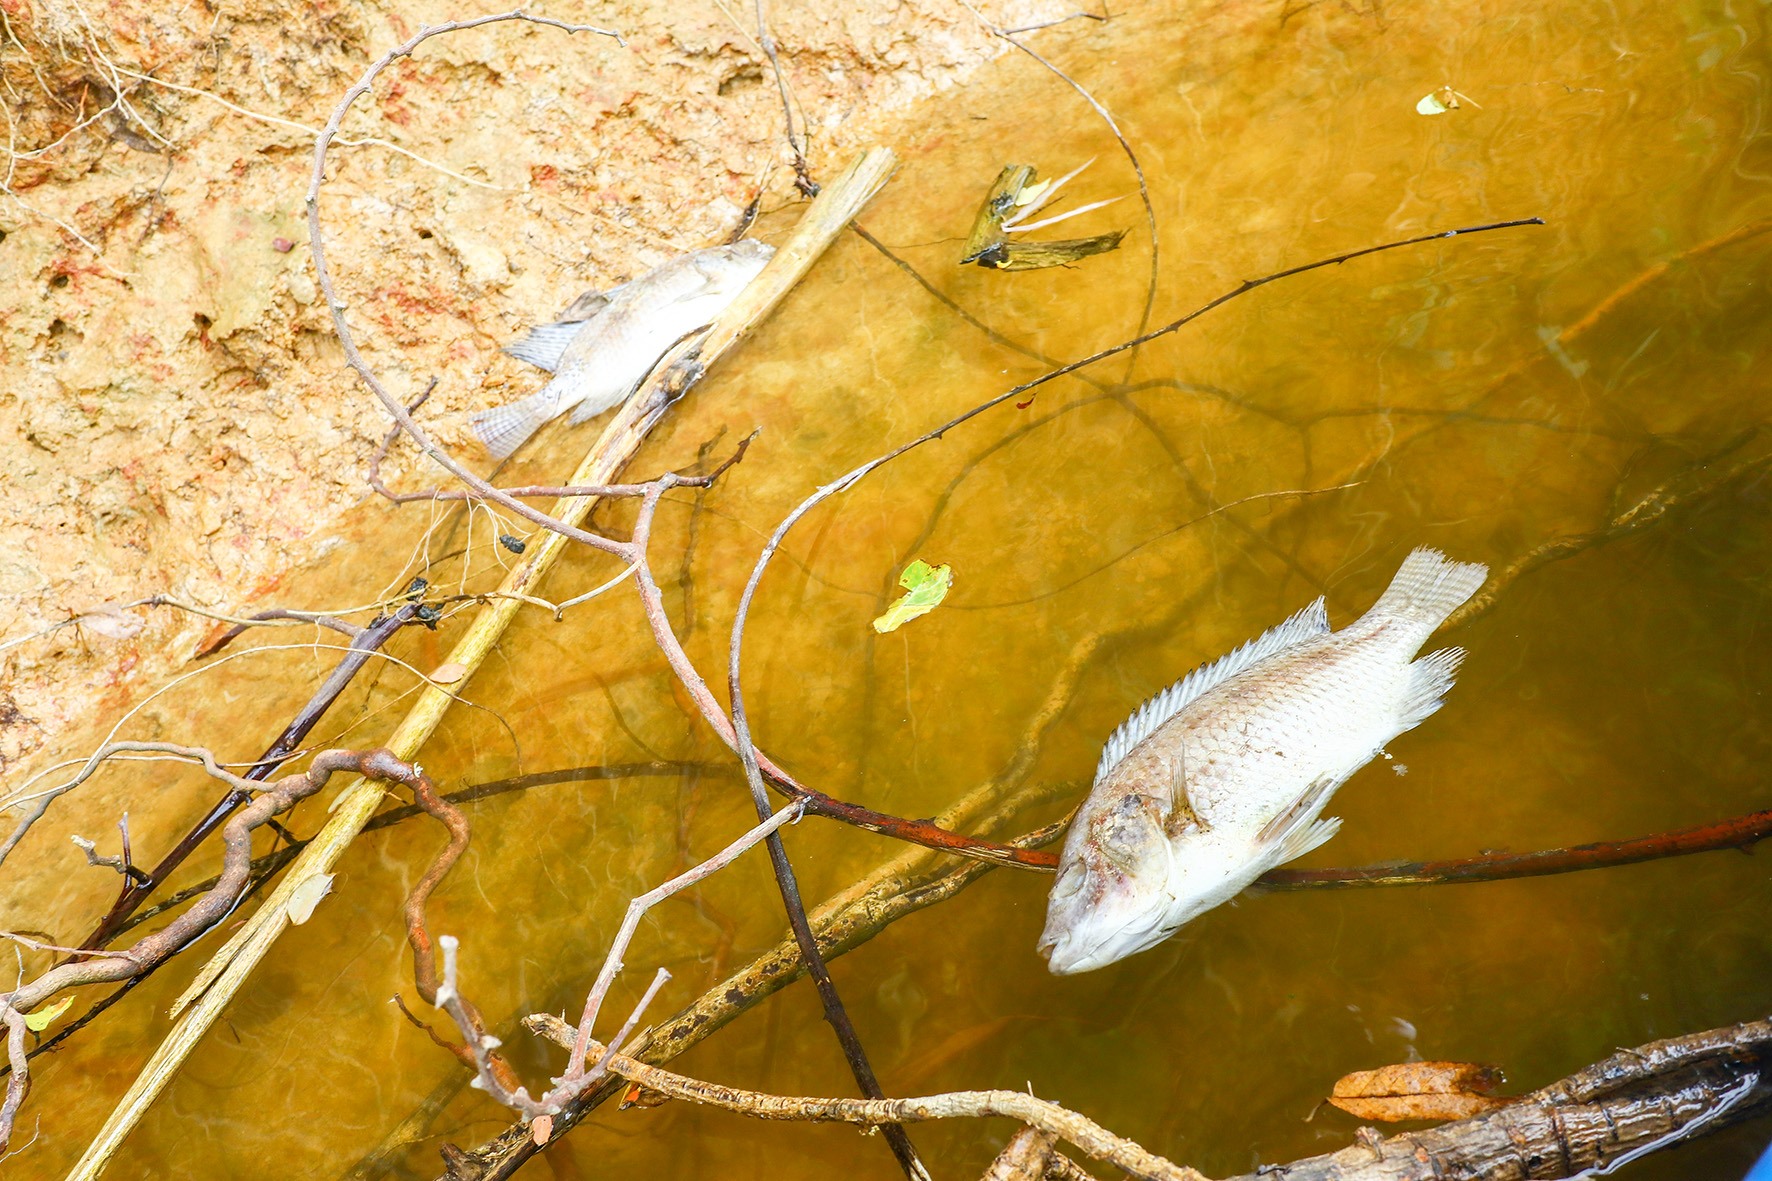 Nguyên nhân cá chết trên sông Hiếu được xác định là do nhiễm mặn - Ảnh: TRẦN TUYỀN